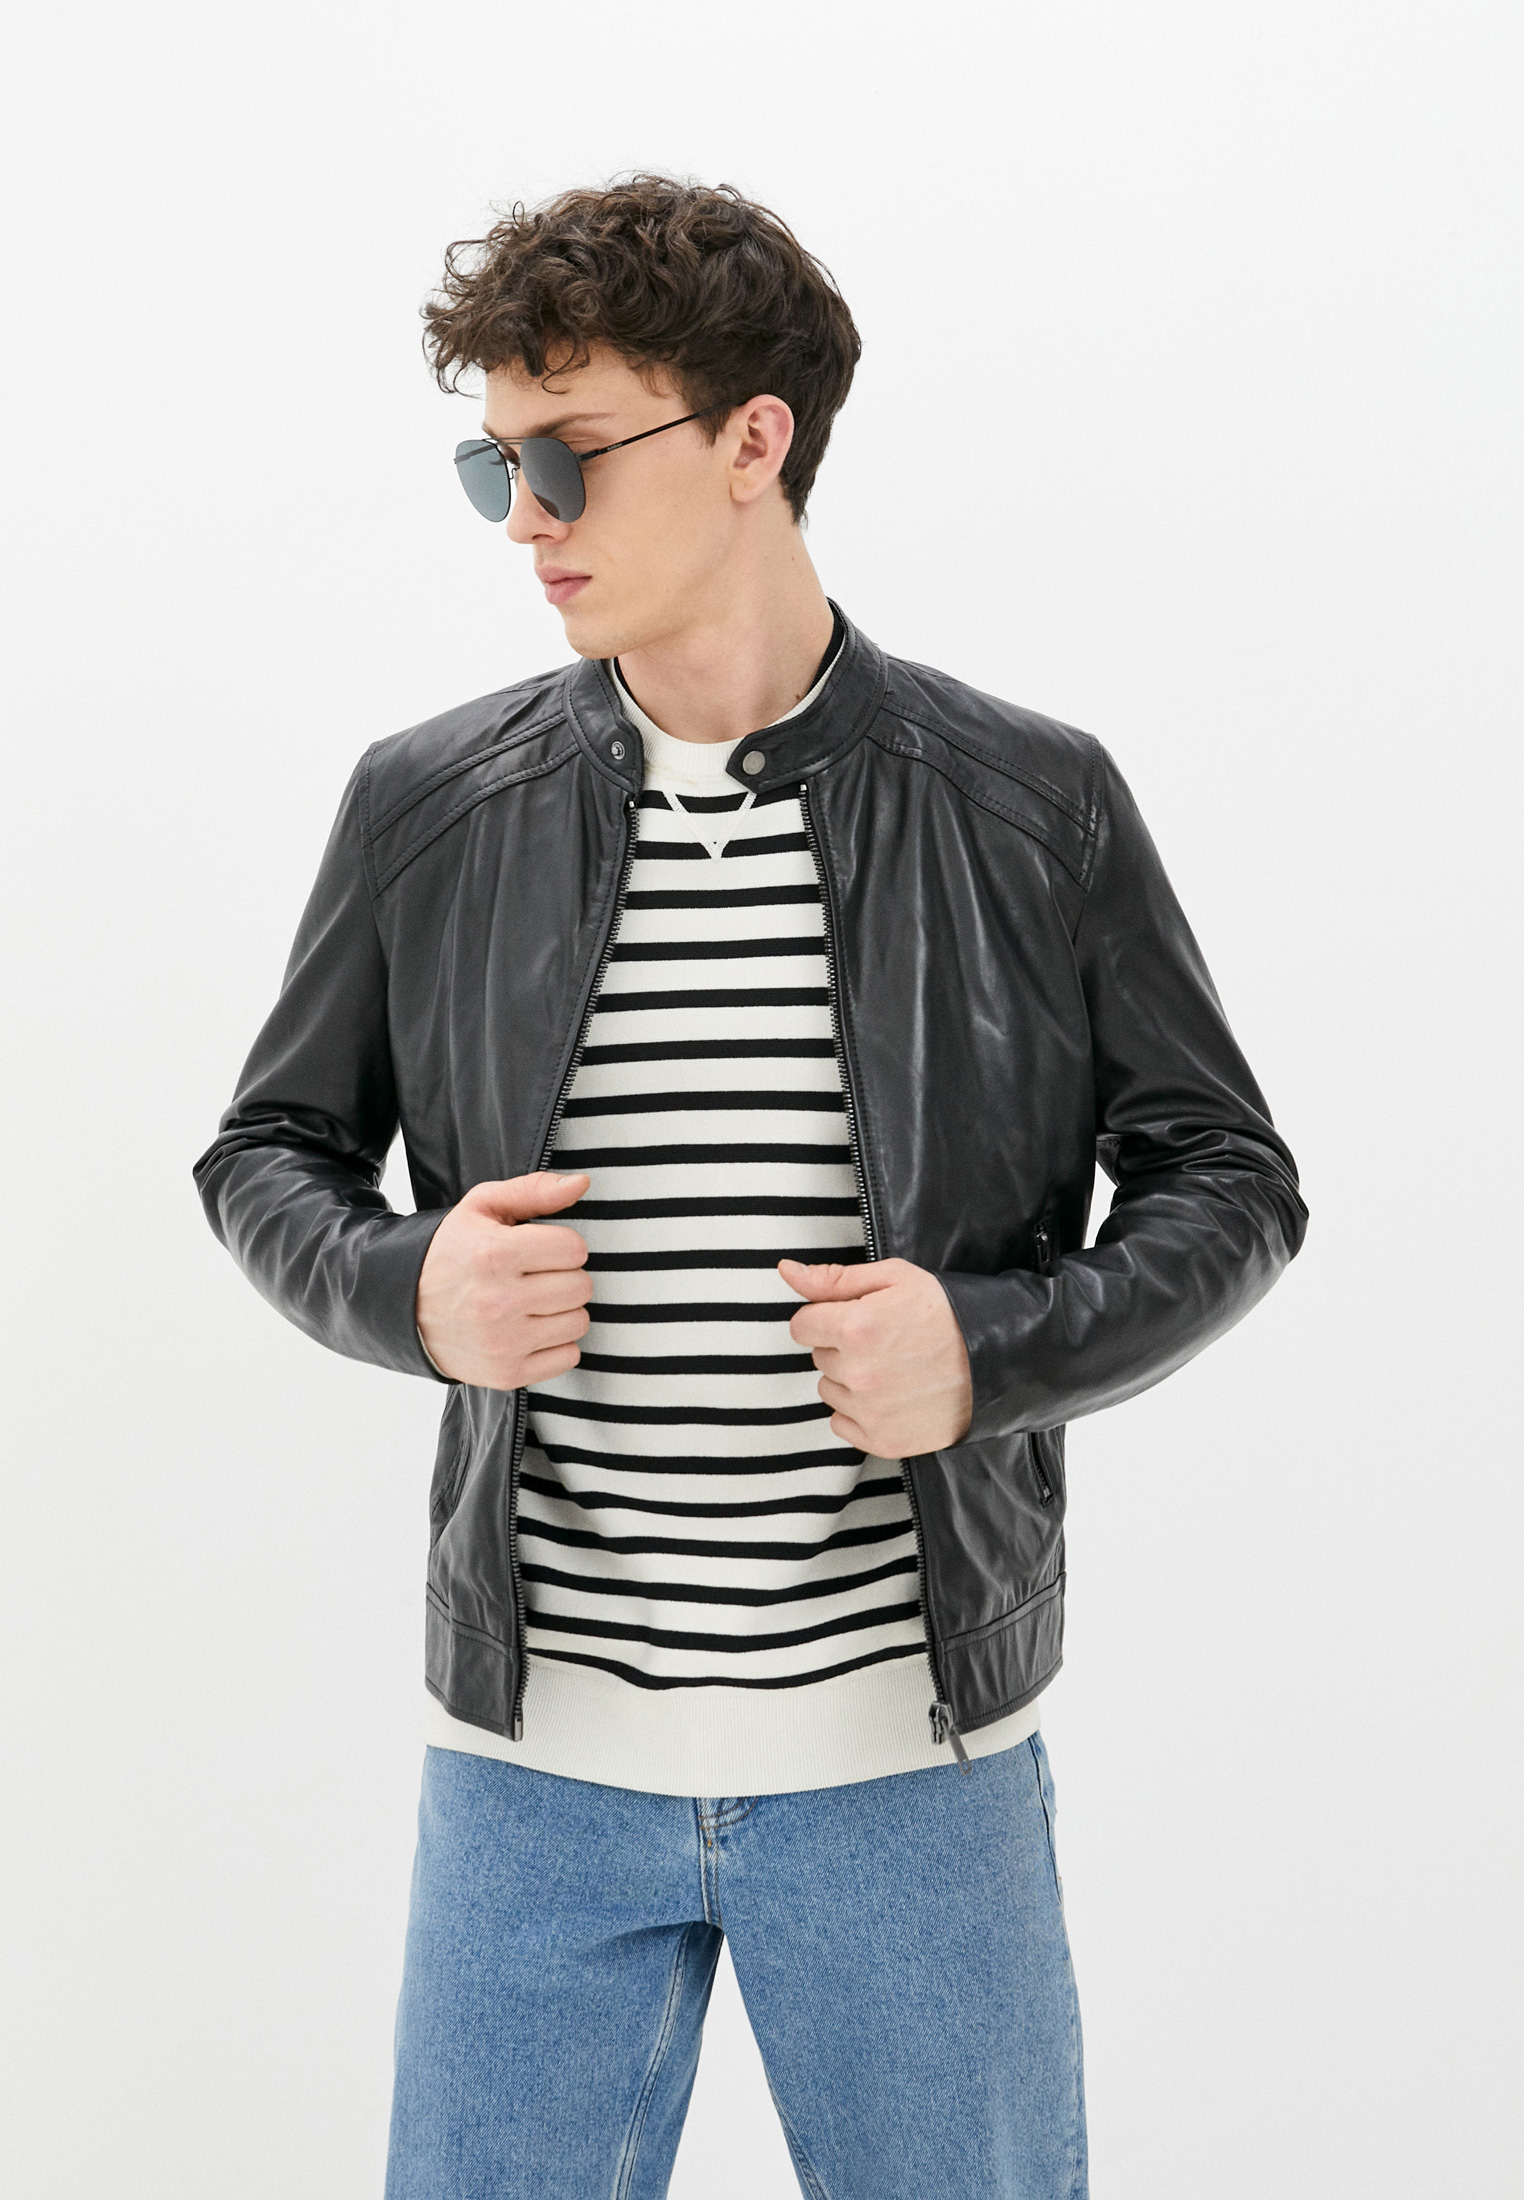 Куртка кожаная Urban Fashion for Men PN025S6, цвет: черный, MP002XM1HDW4 — купить в интернет-магазине Lamoda